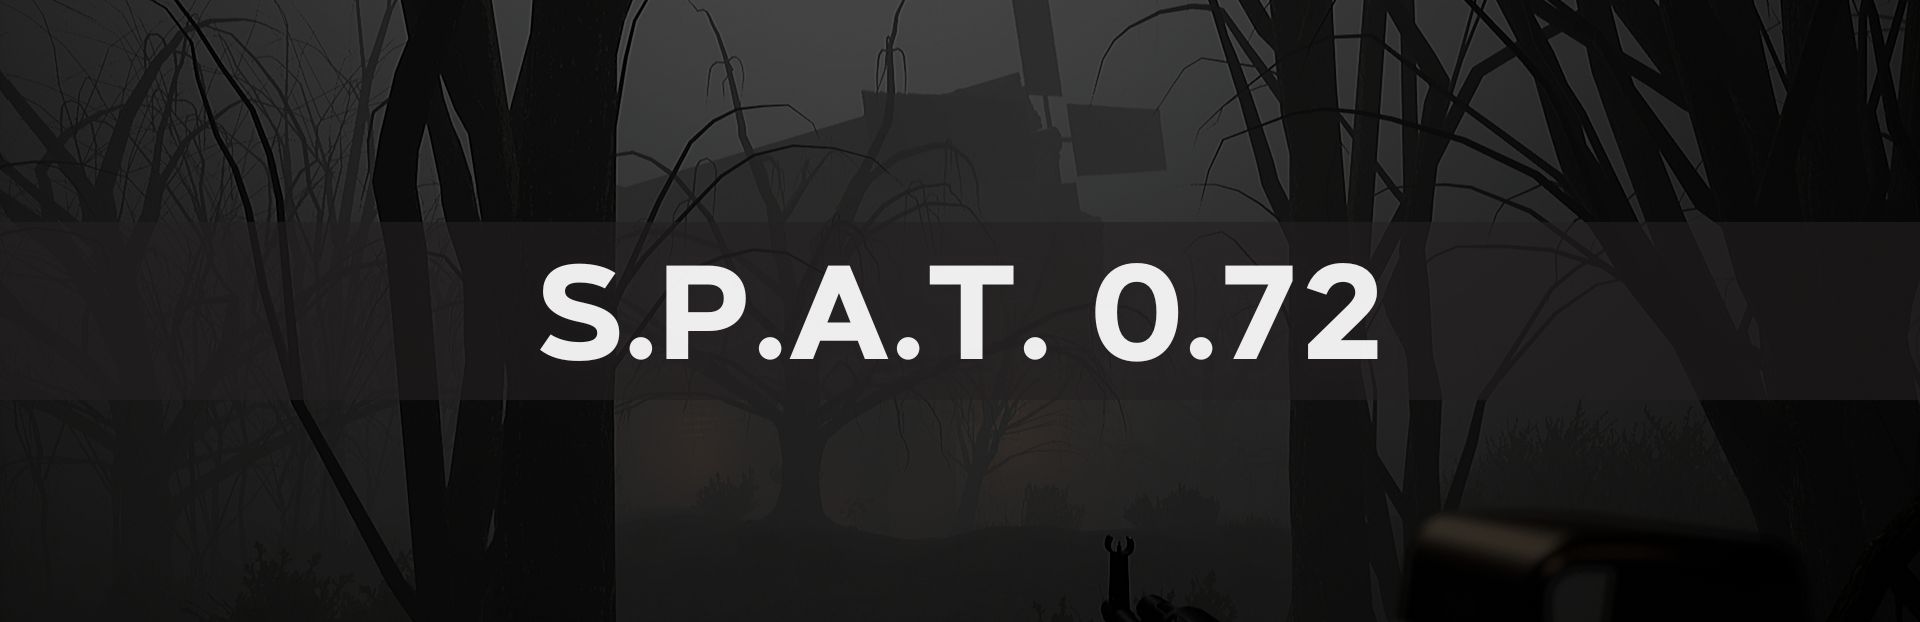 SPAT 0.72 update